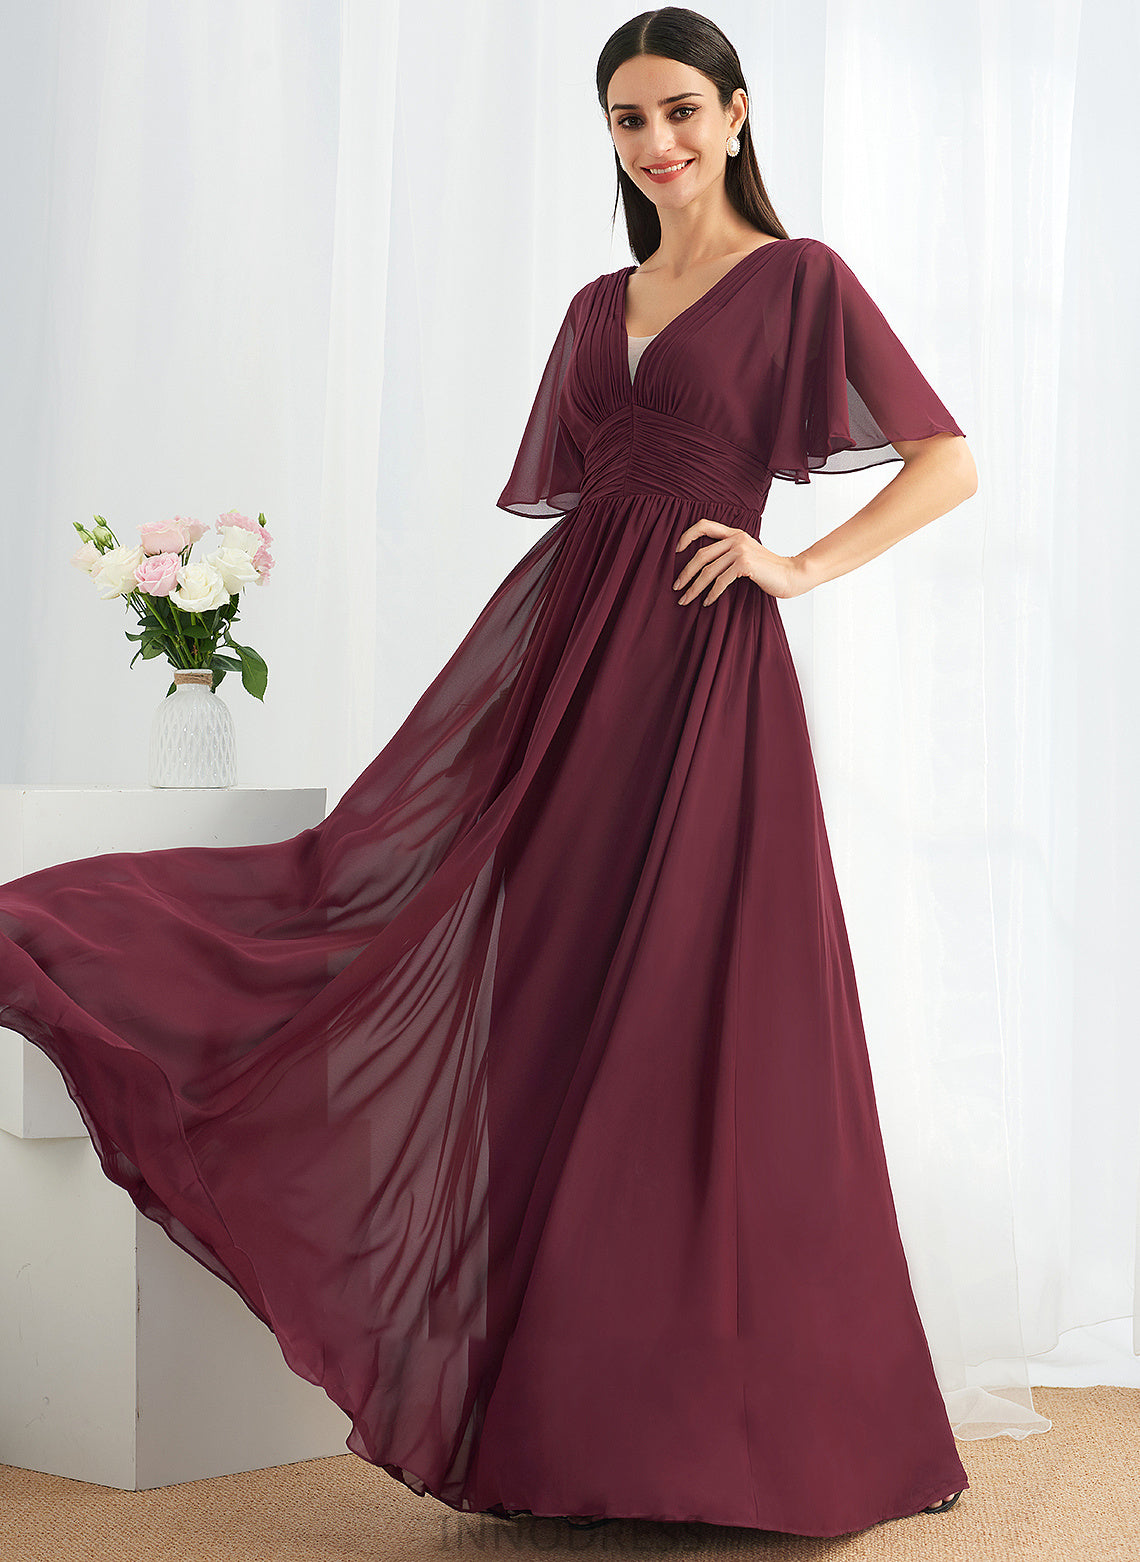 Embellishment Neckline V-neck Silhouette Floor-Length Fabric Length A-Line Ruffle Adrienne A-Line/Princess Sleeveless